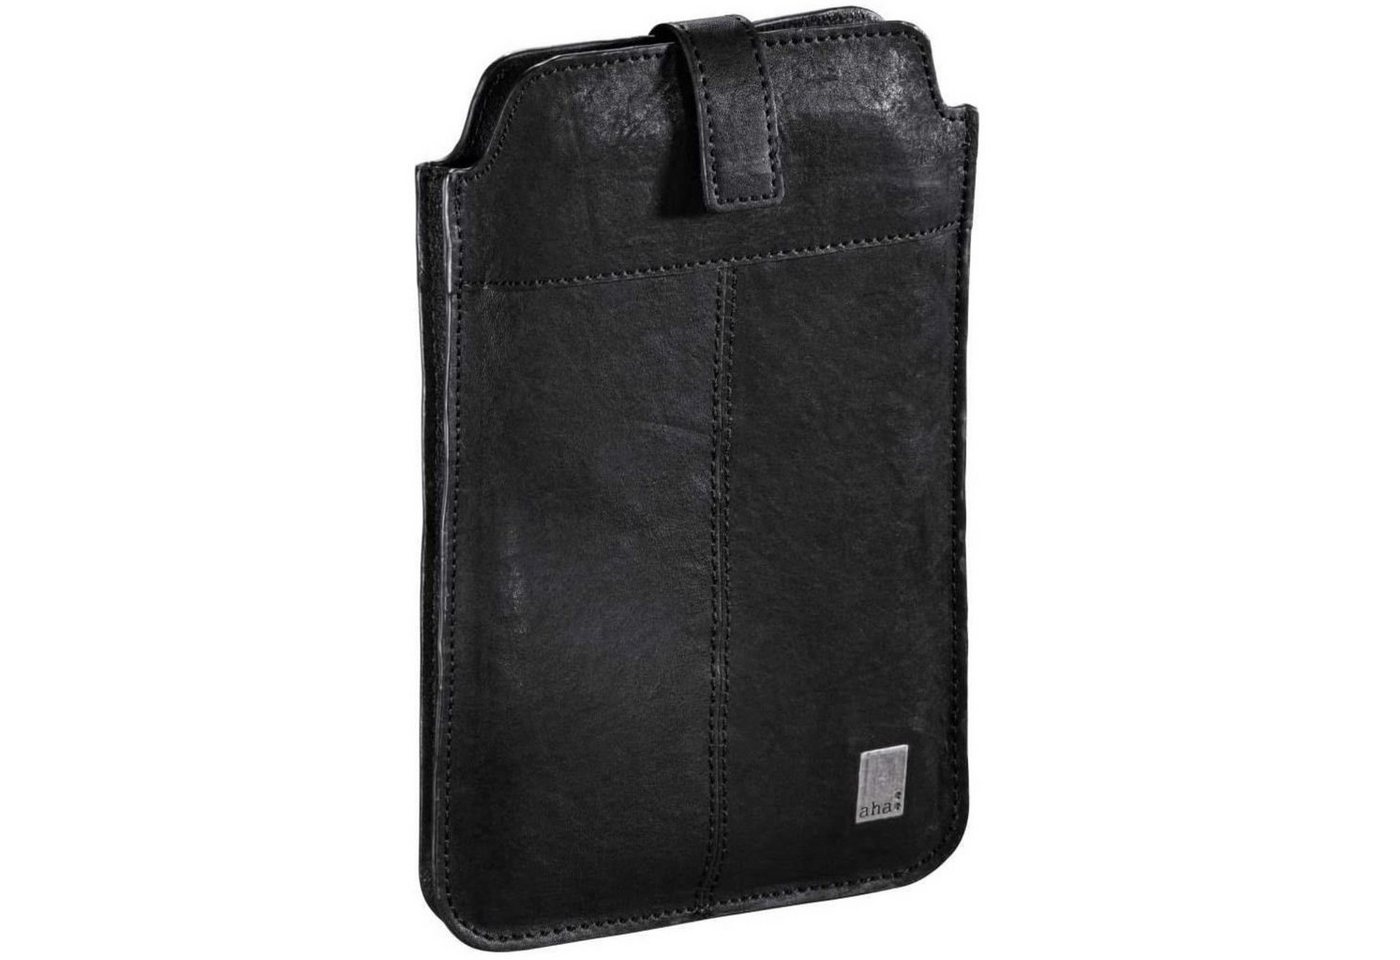 aha Tablet-Hülle Vintage Leder-Tasche Schutz-Hülle Etui Cover 7-8, Anti-Kratz Sleeve, passend für Tablet PC eReader 7" bis 8,3" Zoll etc." von aha